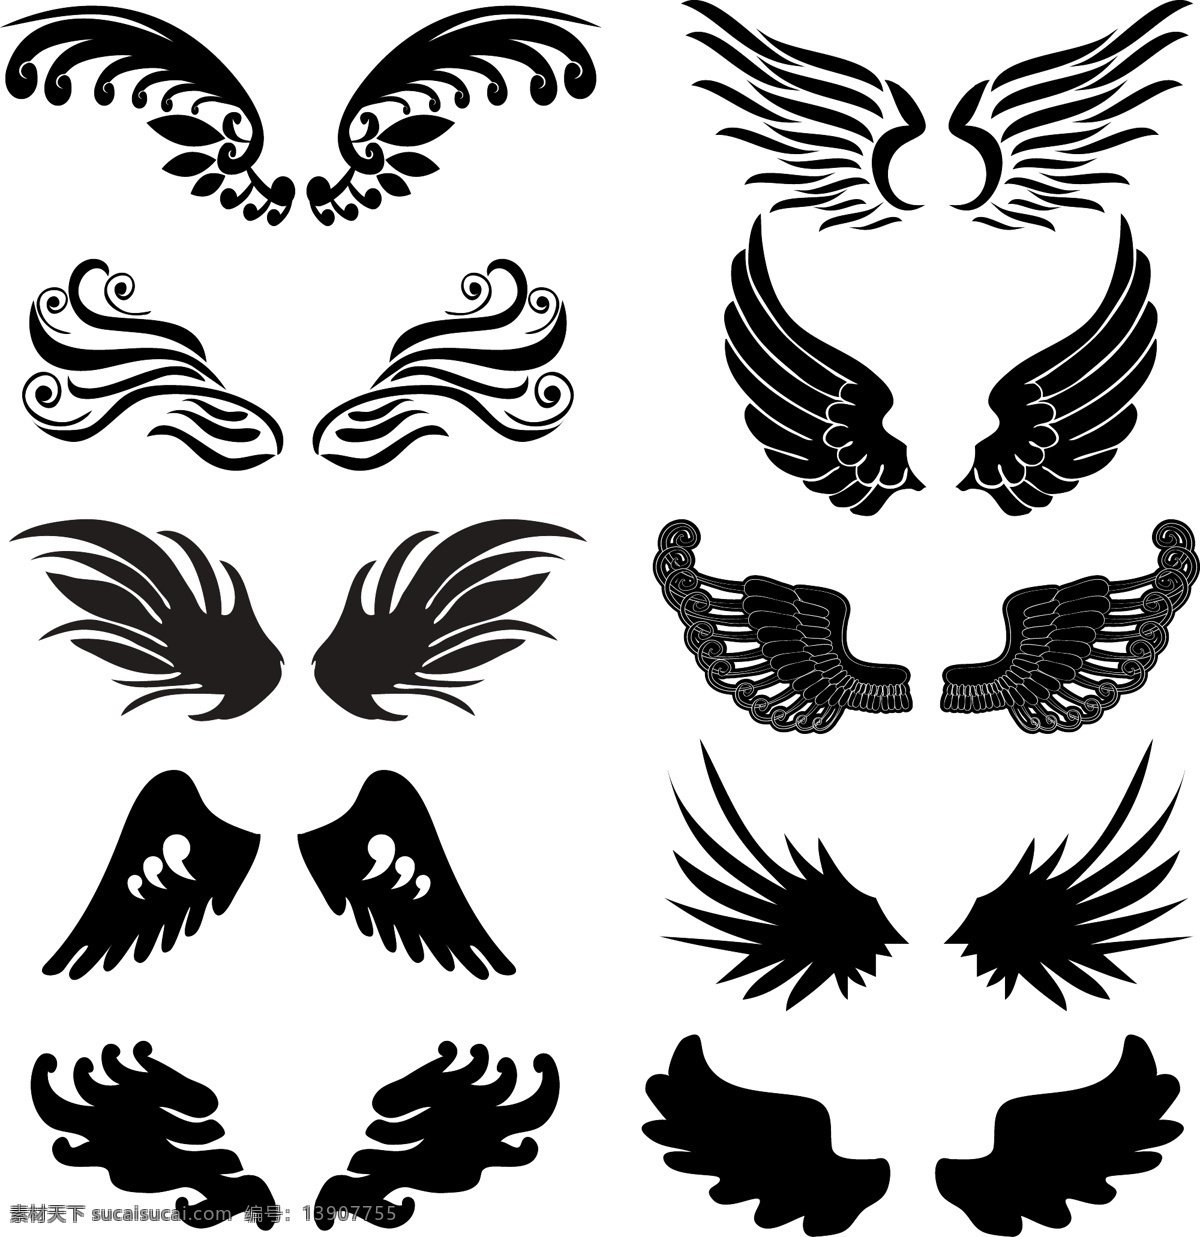 翅膀 羽毛 天使翅膀 翅膀设计 翅膀素材 装饰翅膀 鸟类翅膀 鸟儿翅膀 纹身图案 手绘 矢量